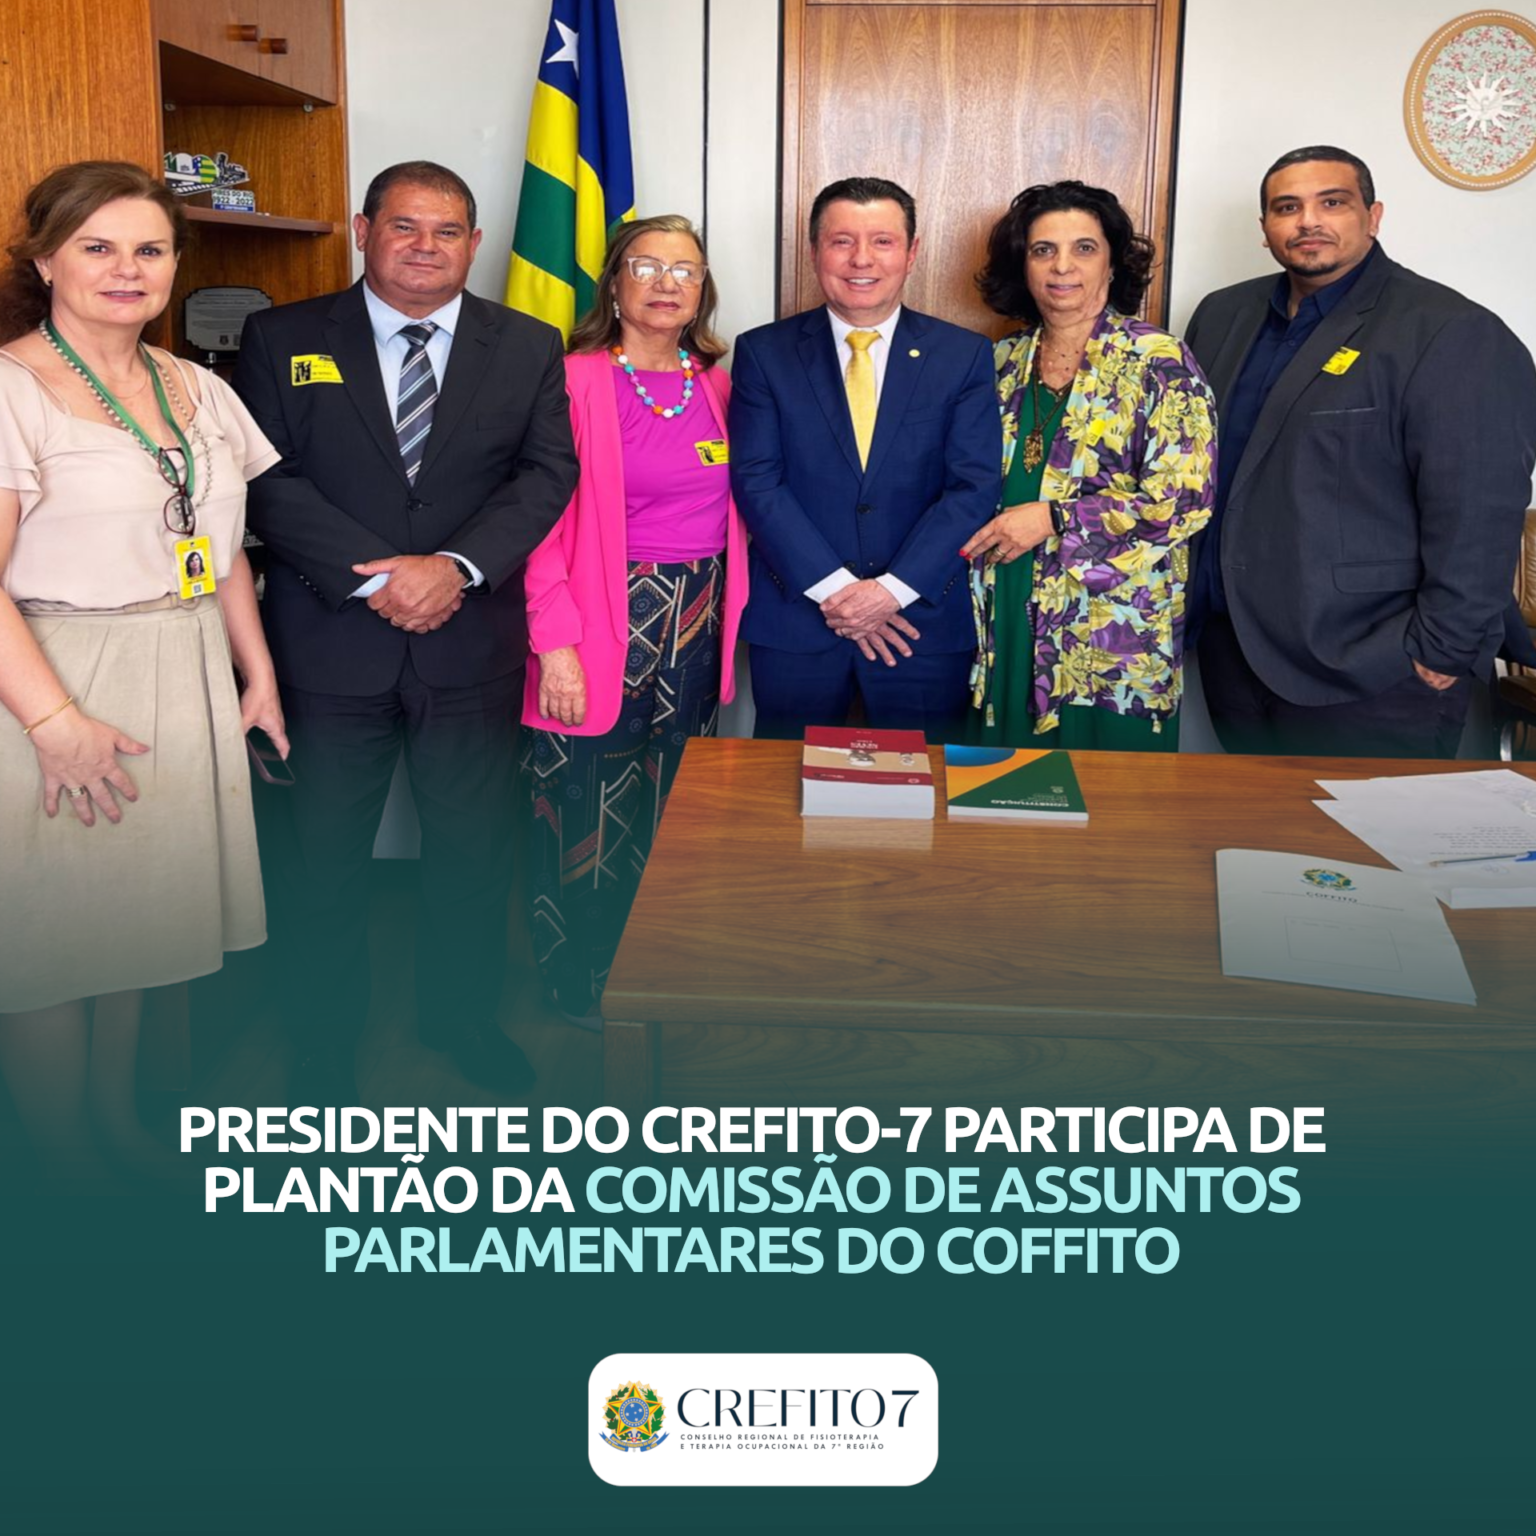 PRESIDENTE DO CREFITO-7 PARTICIPA DE PLANTÃO DA COMISSÃO DE ASSUNTOS PARLAMENTARES DO COFFITO